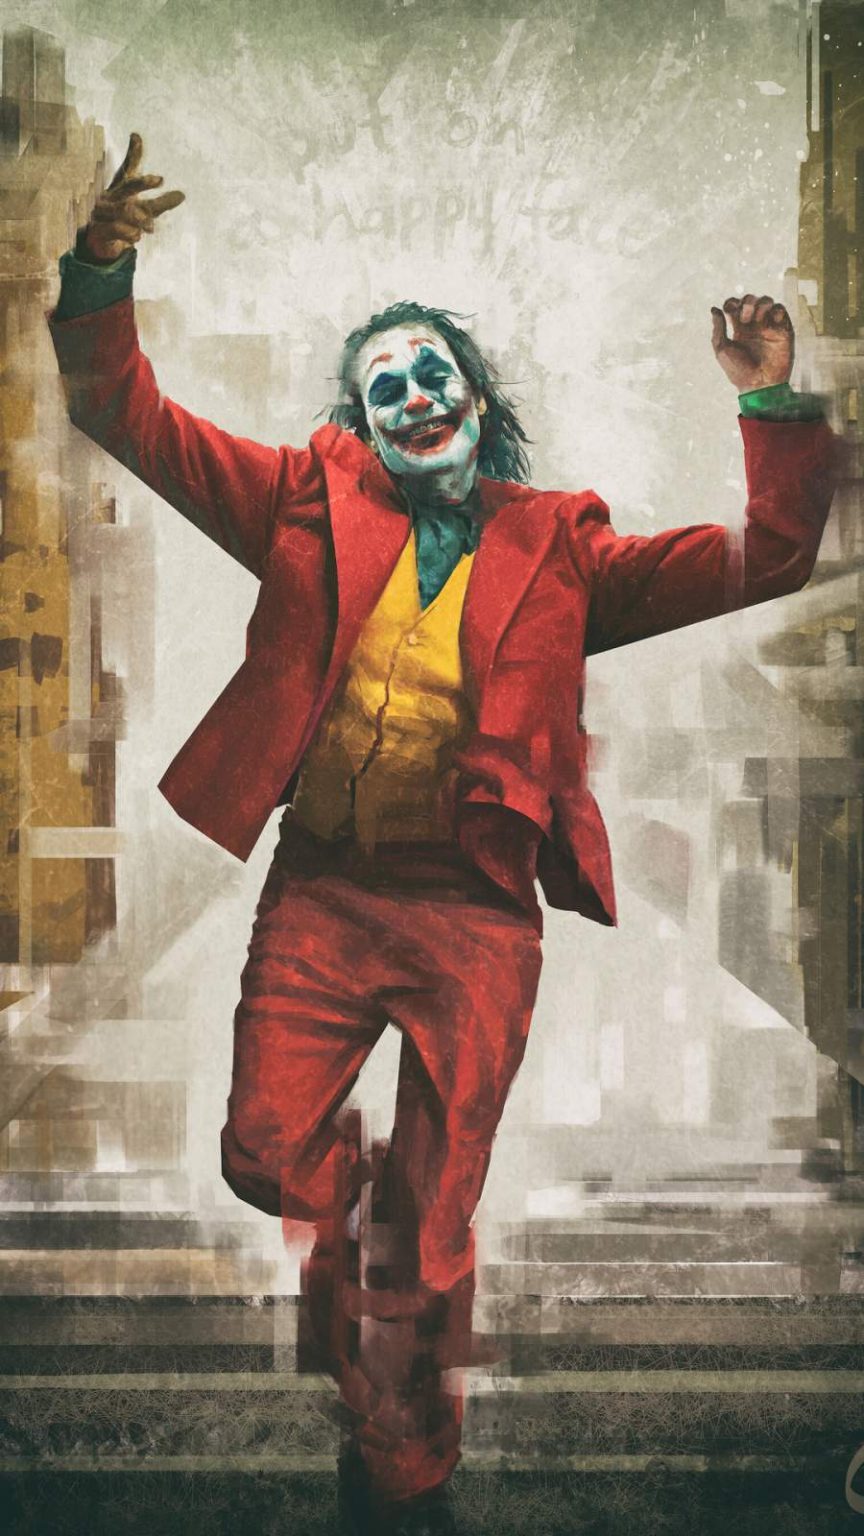 Joker Happy Face iPhone Wallpaper - iPhone Wallpapers : iPhone Wallpapers